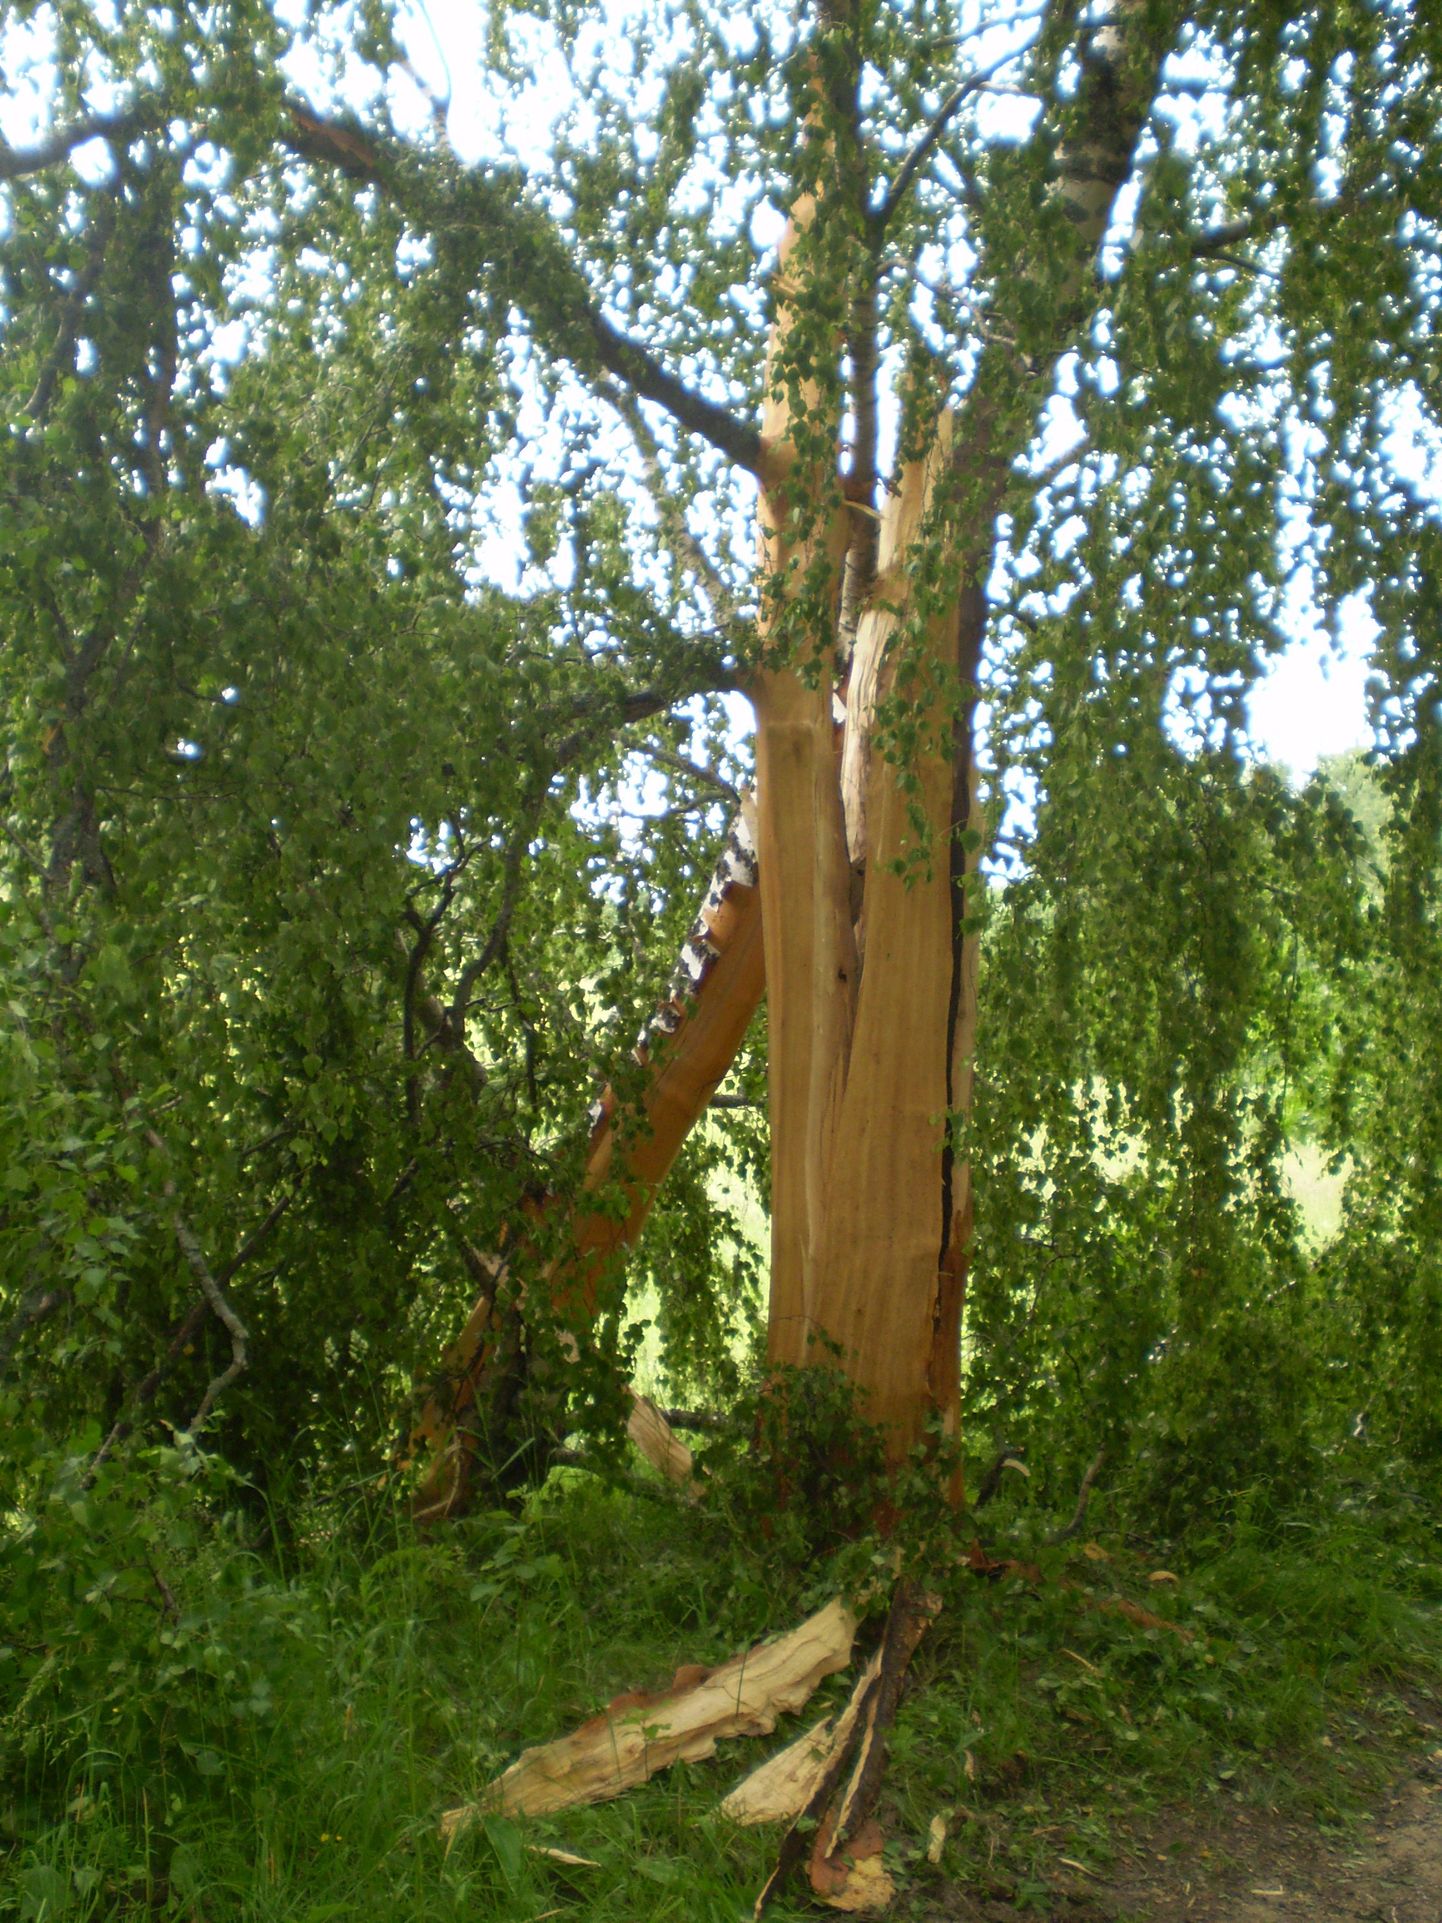 Võrumaal Kolepi külas lõhkus äike kasepuu juppideks nii, et pilpaid leidus veel paarkümmend meetrit puust kaugemalgi.